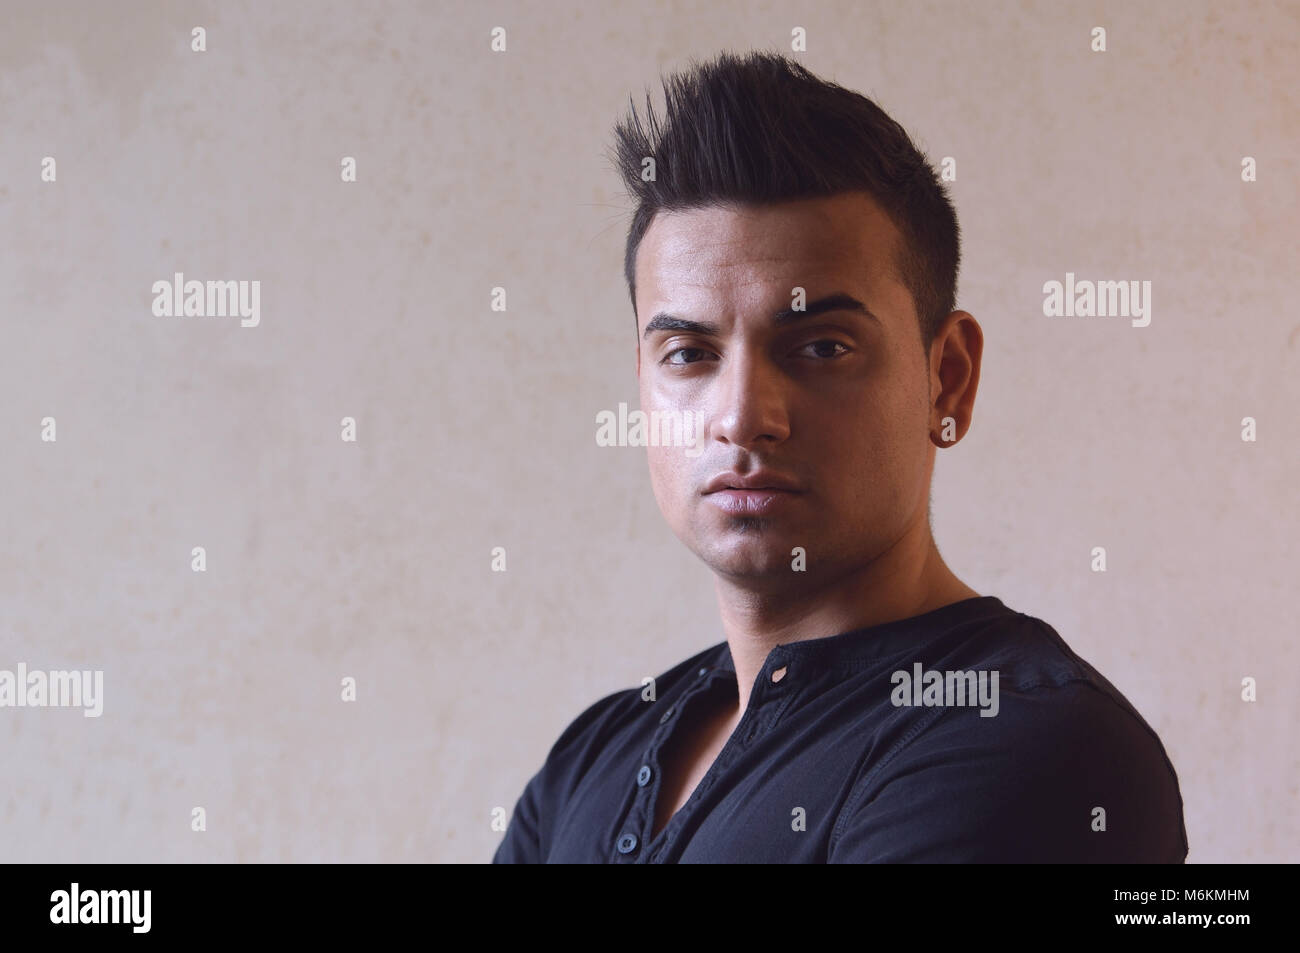 Dunkle moody Portrait von coolen jungen türkischen Mann mit stacheligen Haare Stockfoto